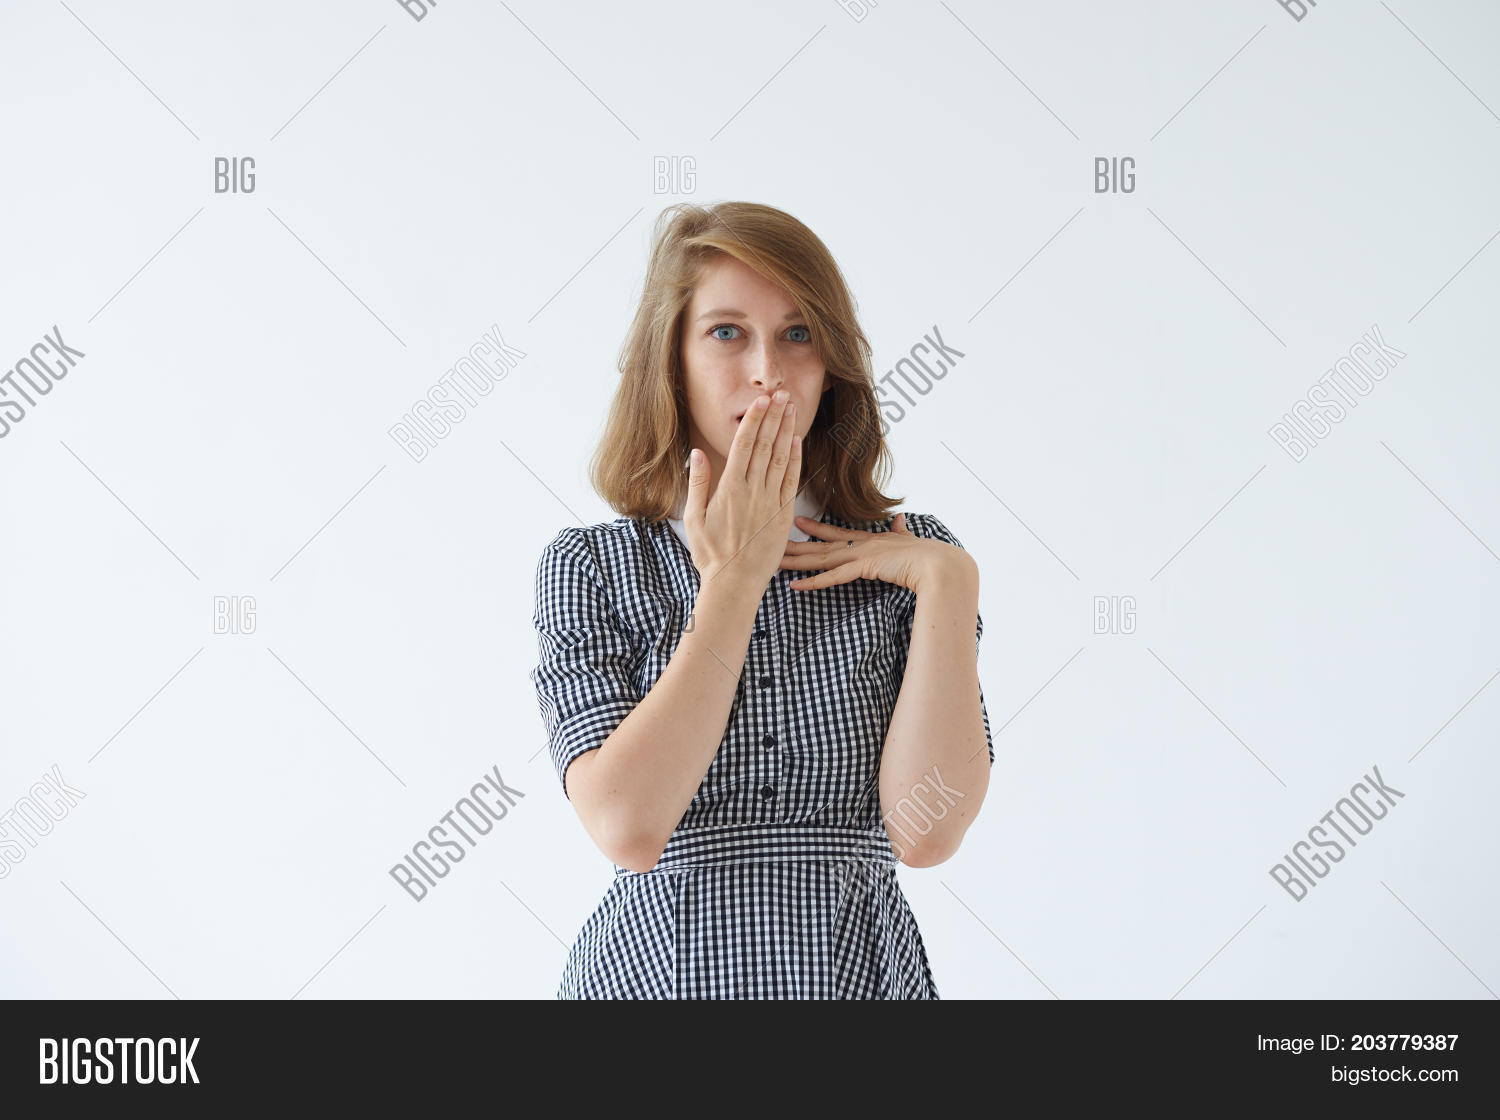 Zakrývanie úst šatami Jazyk tela (porozumieť gestu)